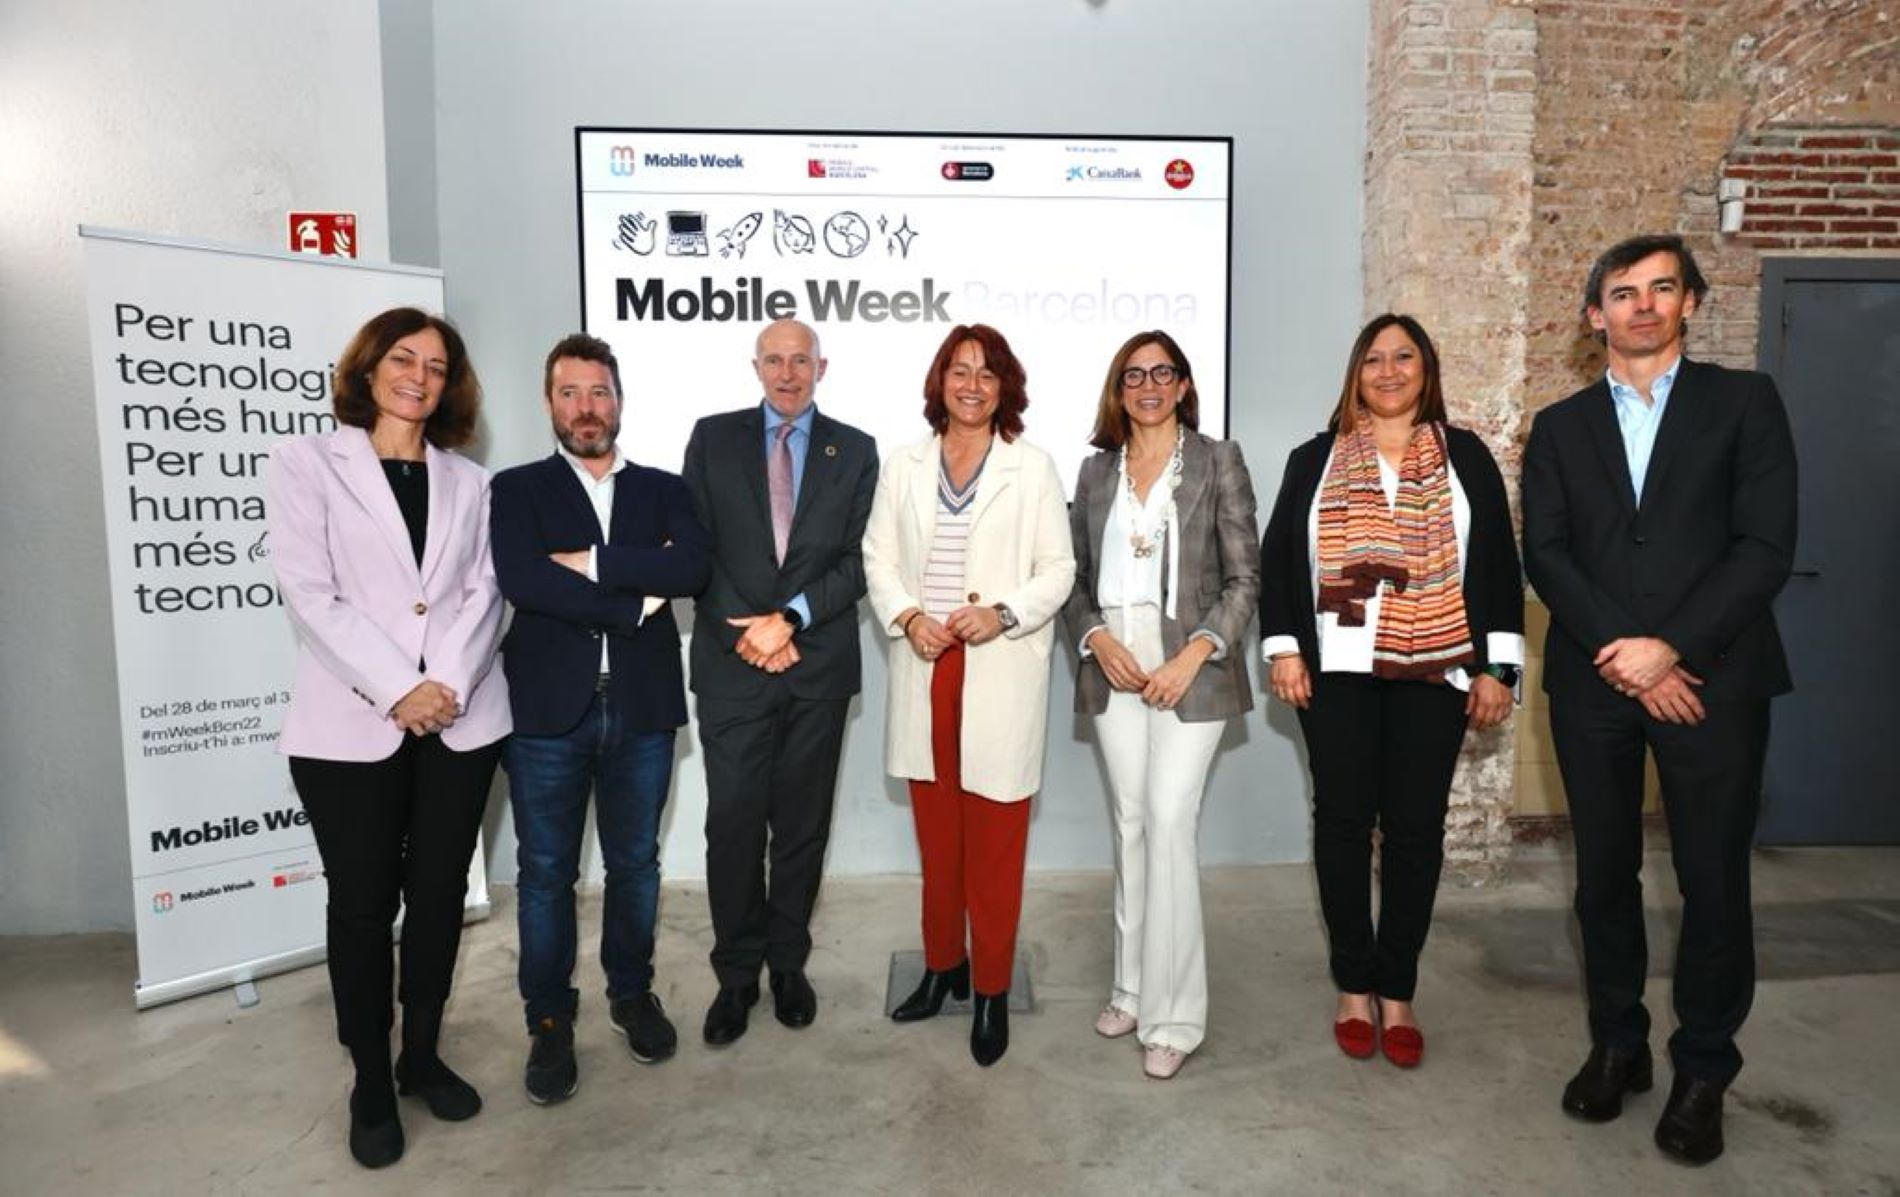 La Mobile Week Barcelona inicia la sexta edición fusionando tecnología y humanismo